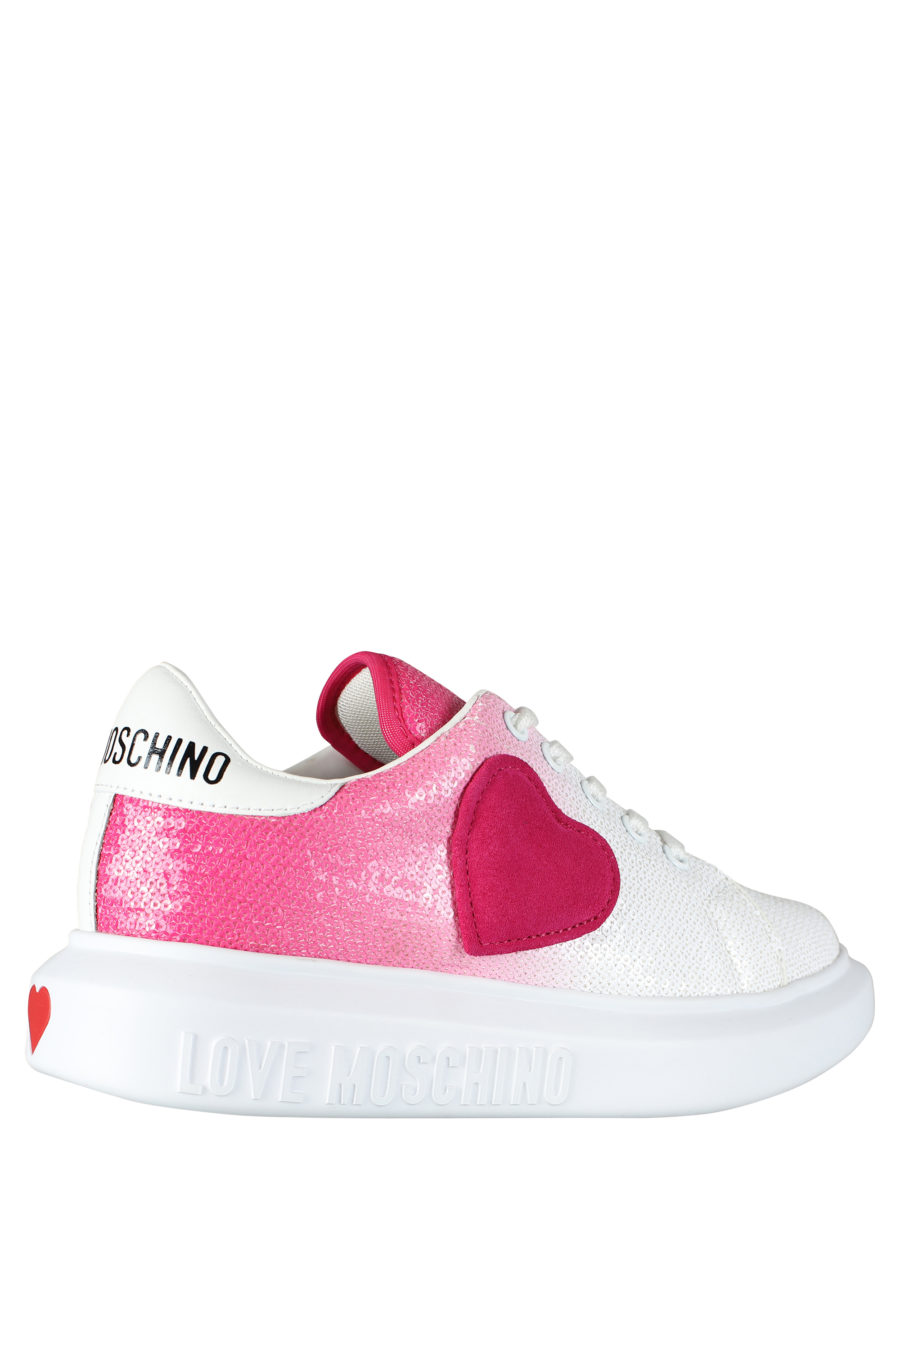 Zapatillas blancas con degrade rosa y lentejuelas - IMG 5262